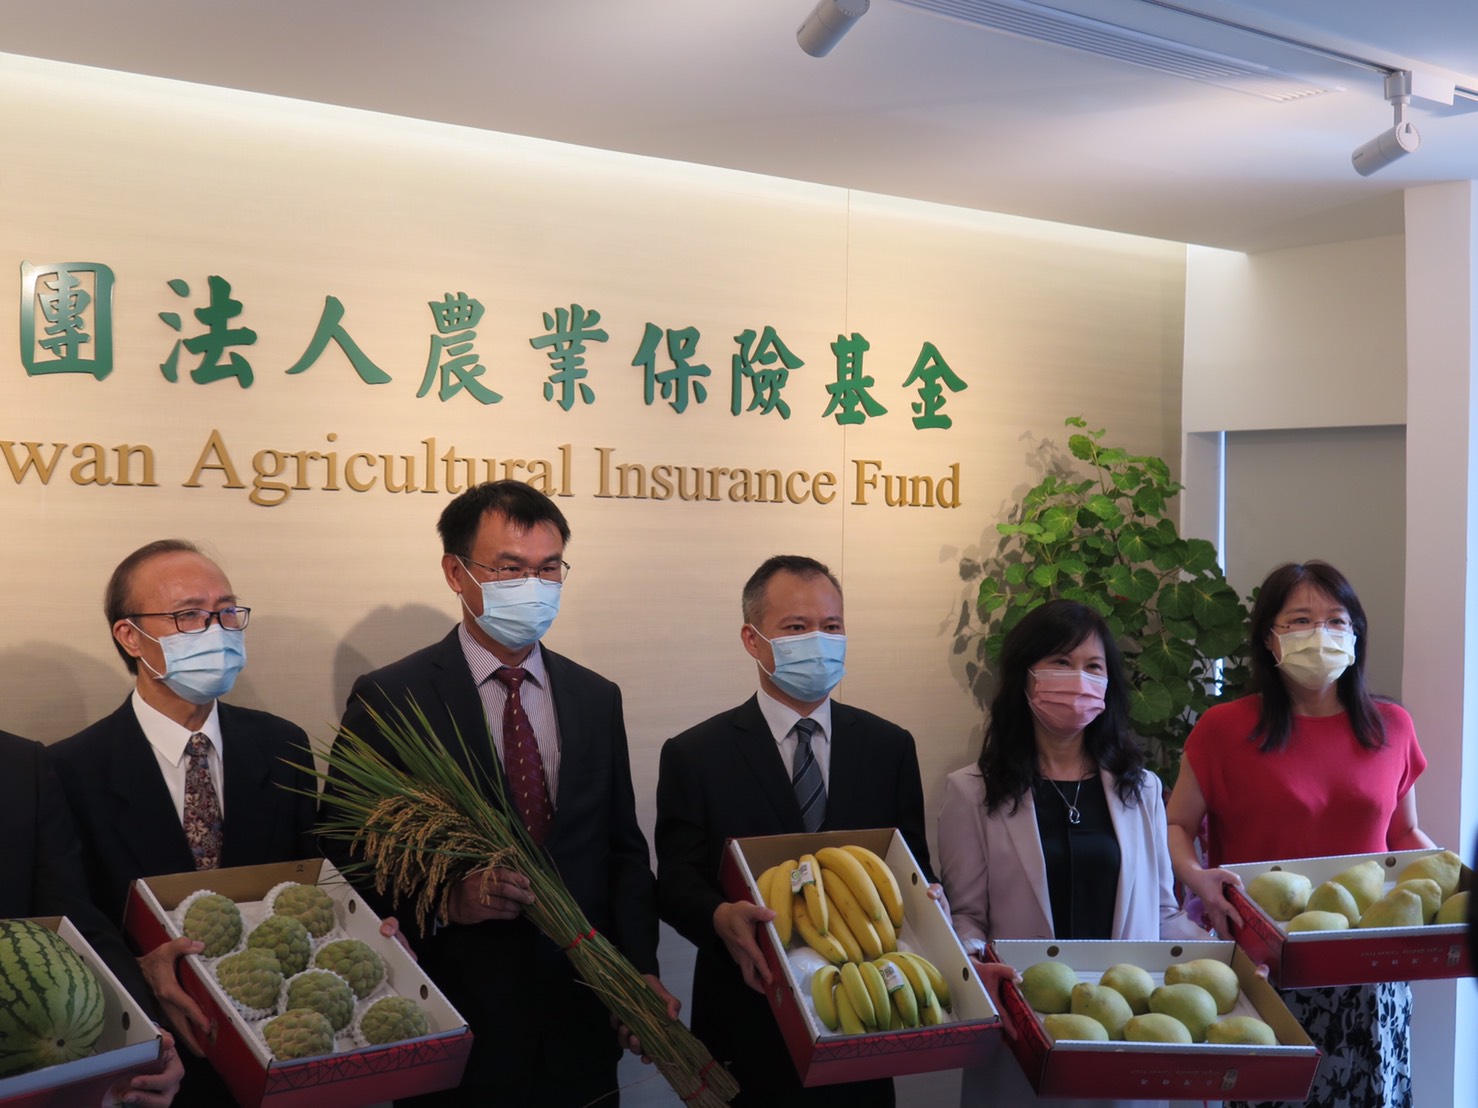 農業保險新里程碑 財團法人農業保險基金舉行揭牌典禮